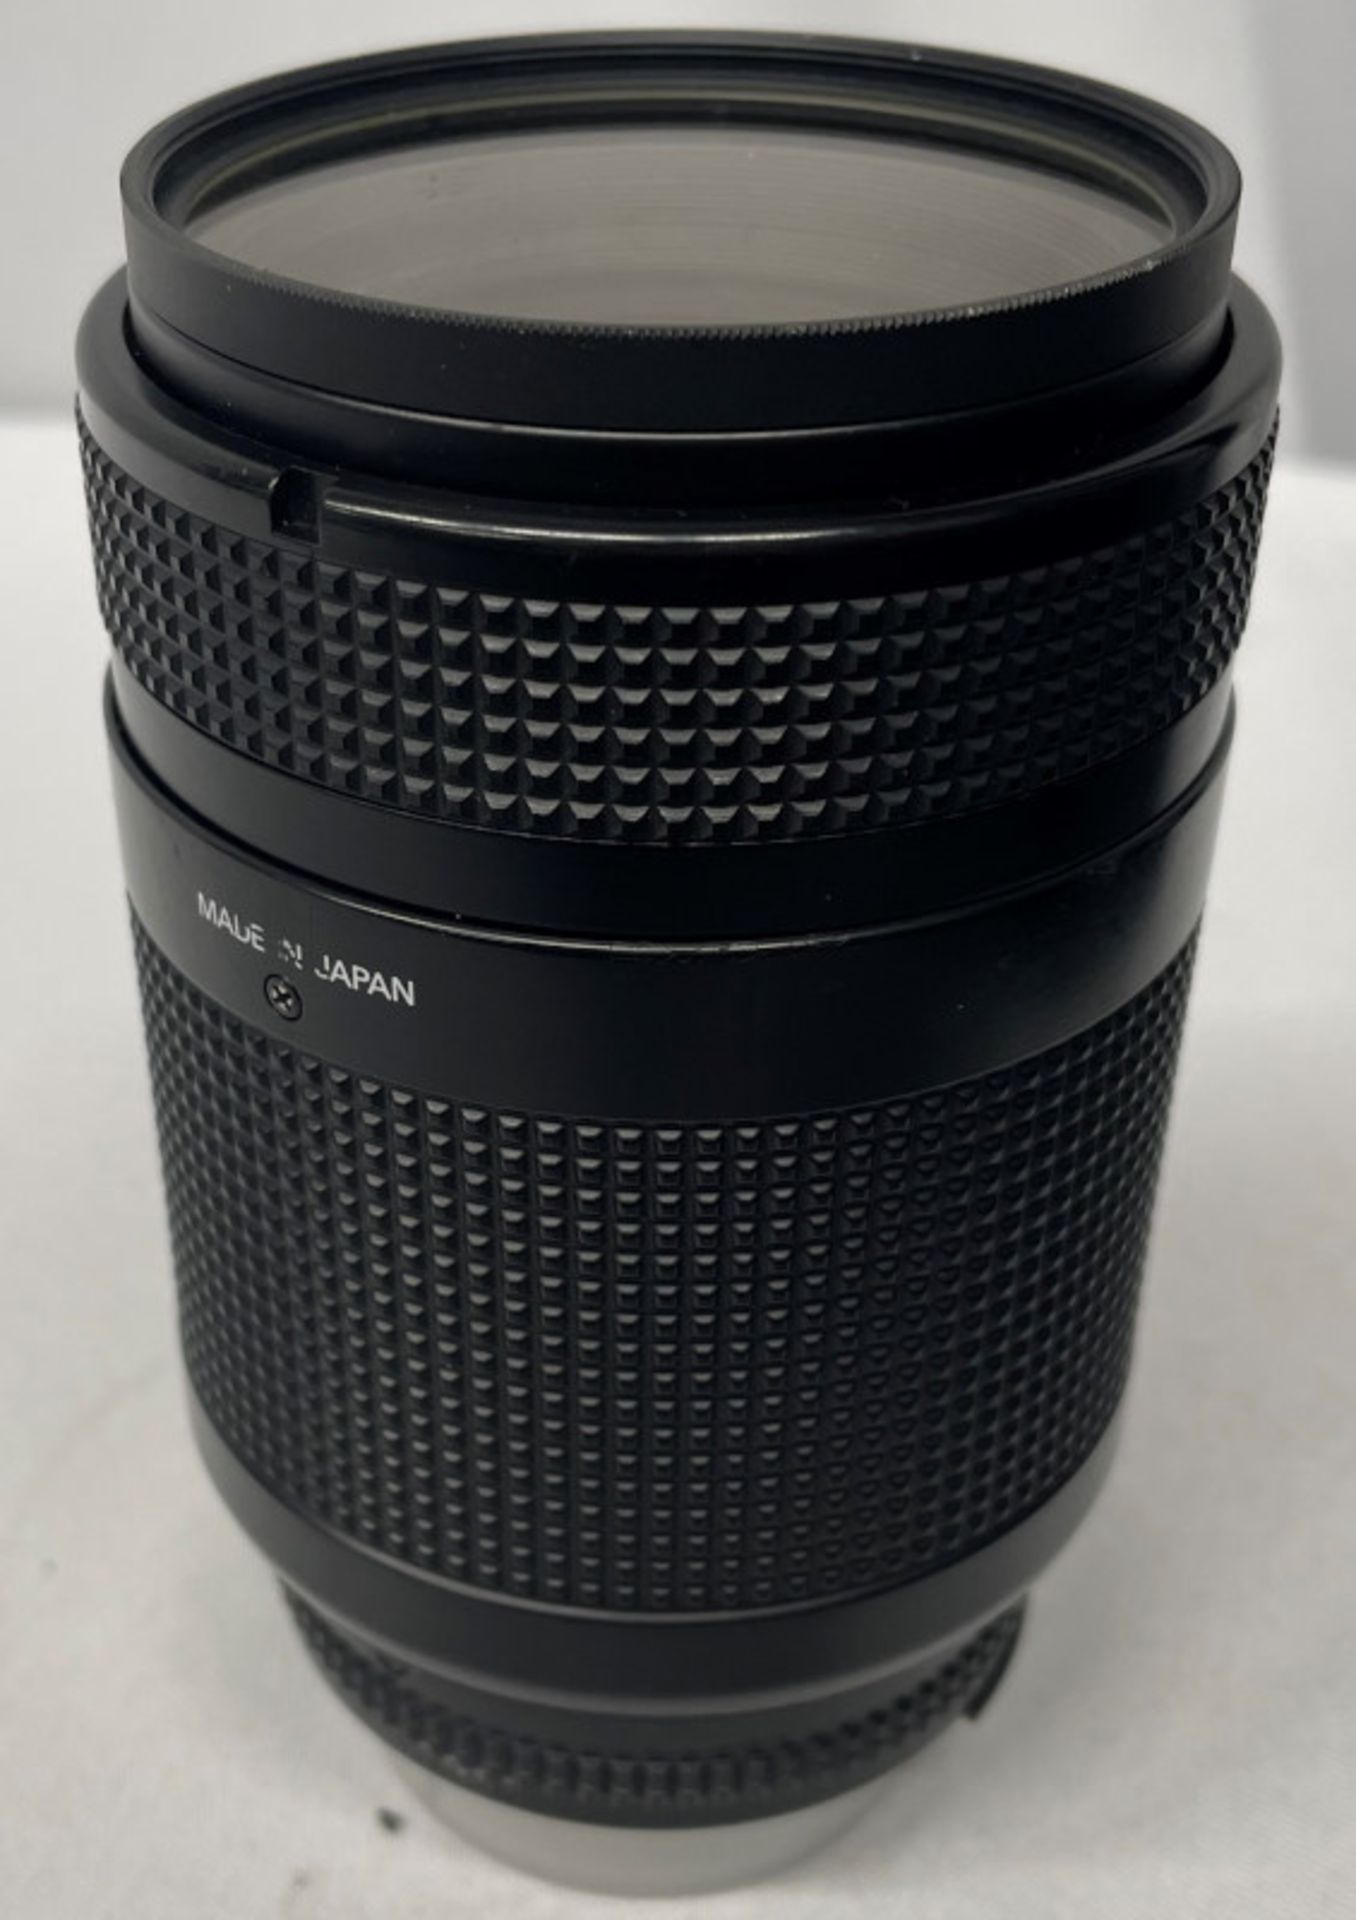 Nikon AF Nikkor 70-210mm - 1:4-5.6 Lens - Serial No. 2432165 with HOYA 62mm UV(O) Filter - Image 2 of 6